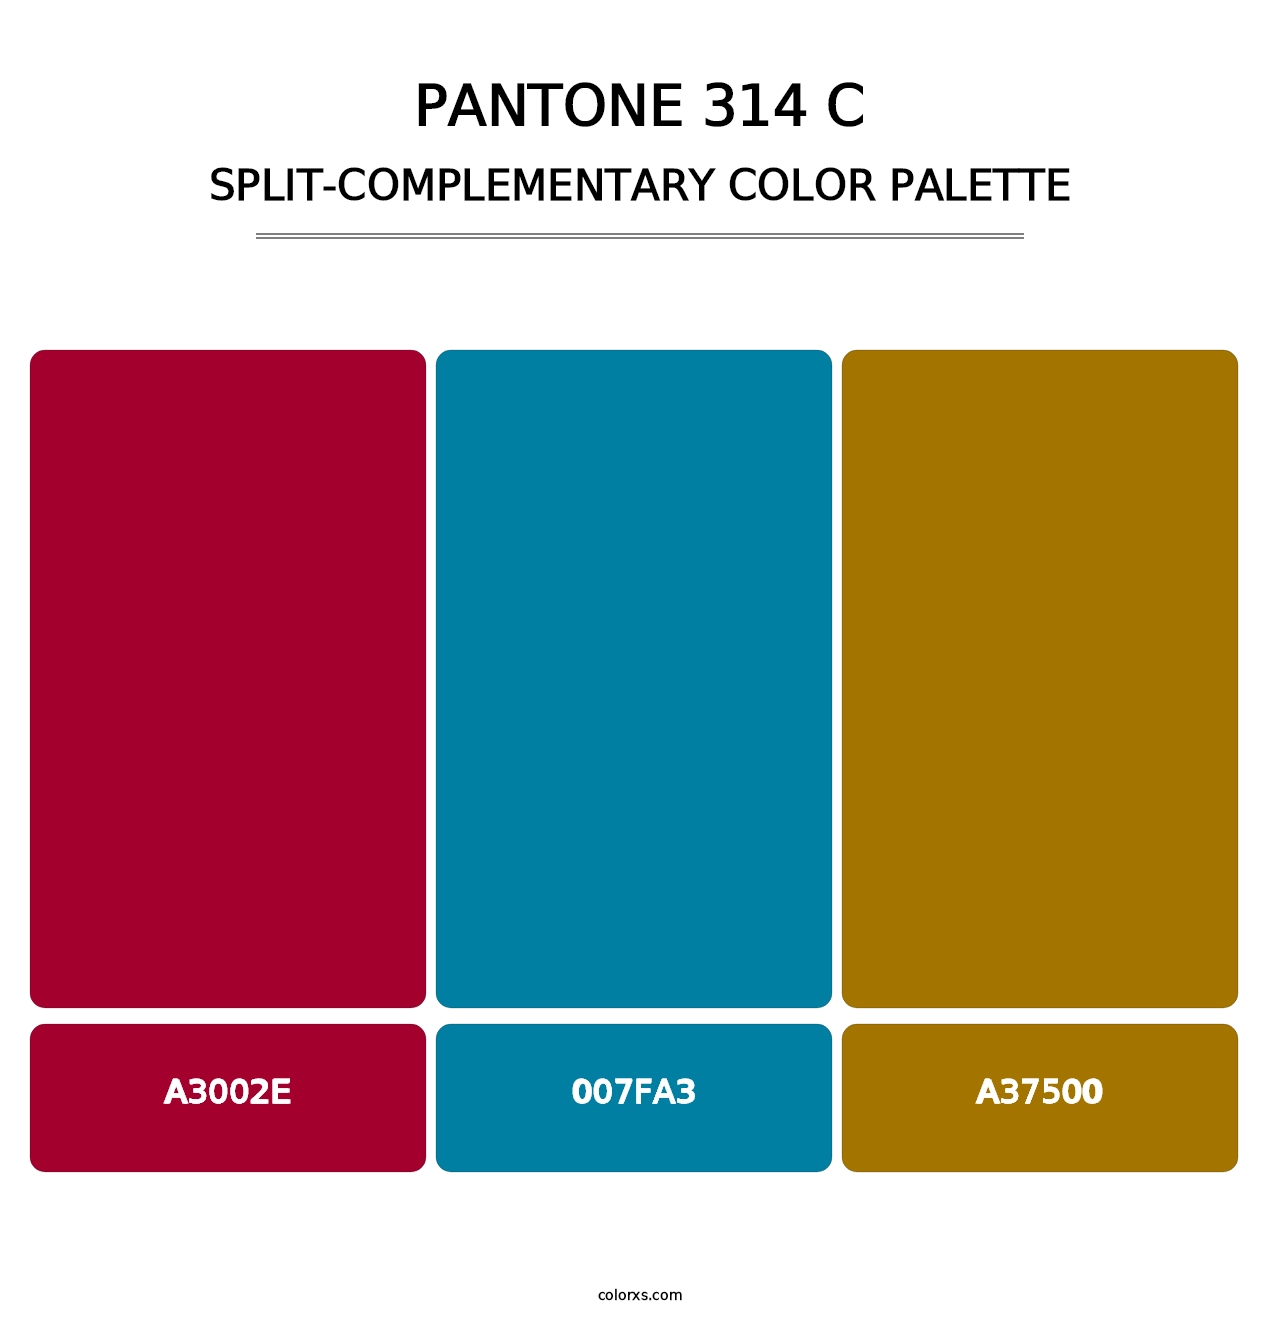 PANTONE 314 C - Split-Complementary Color Palette